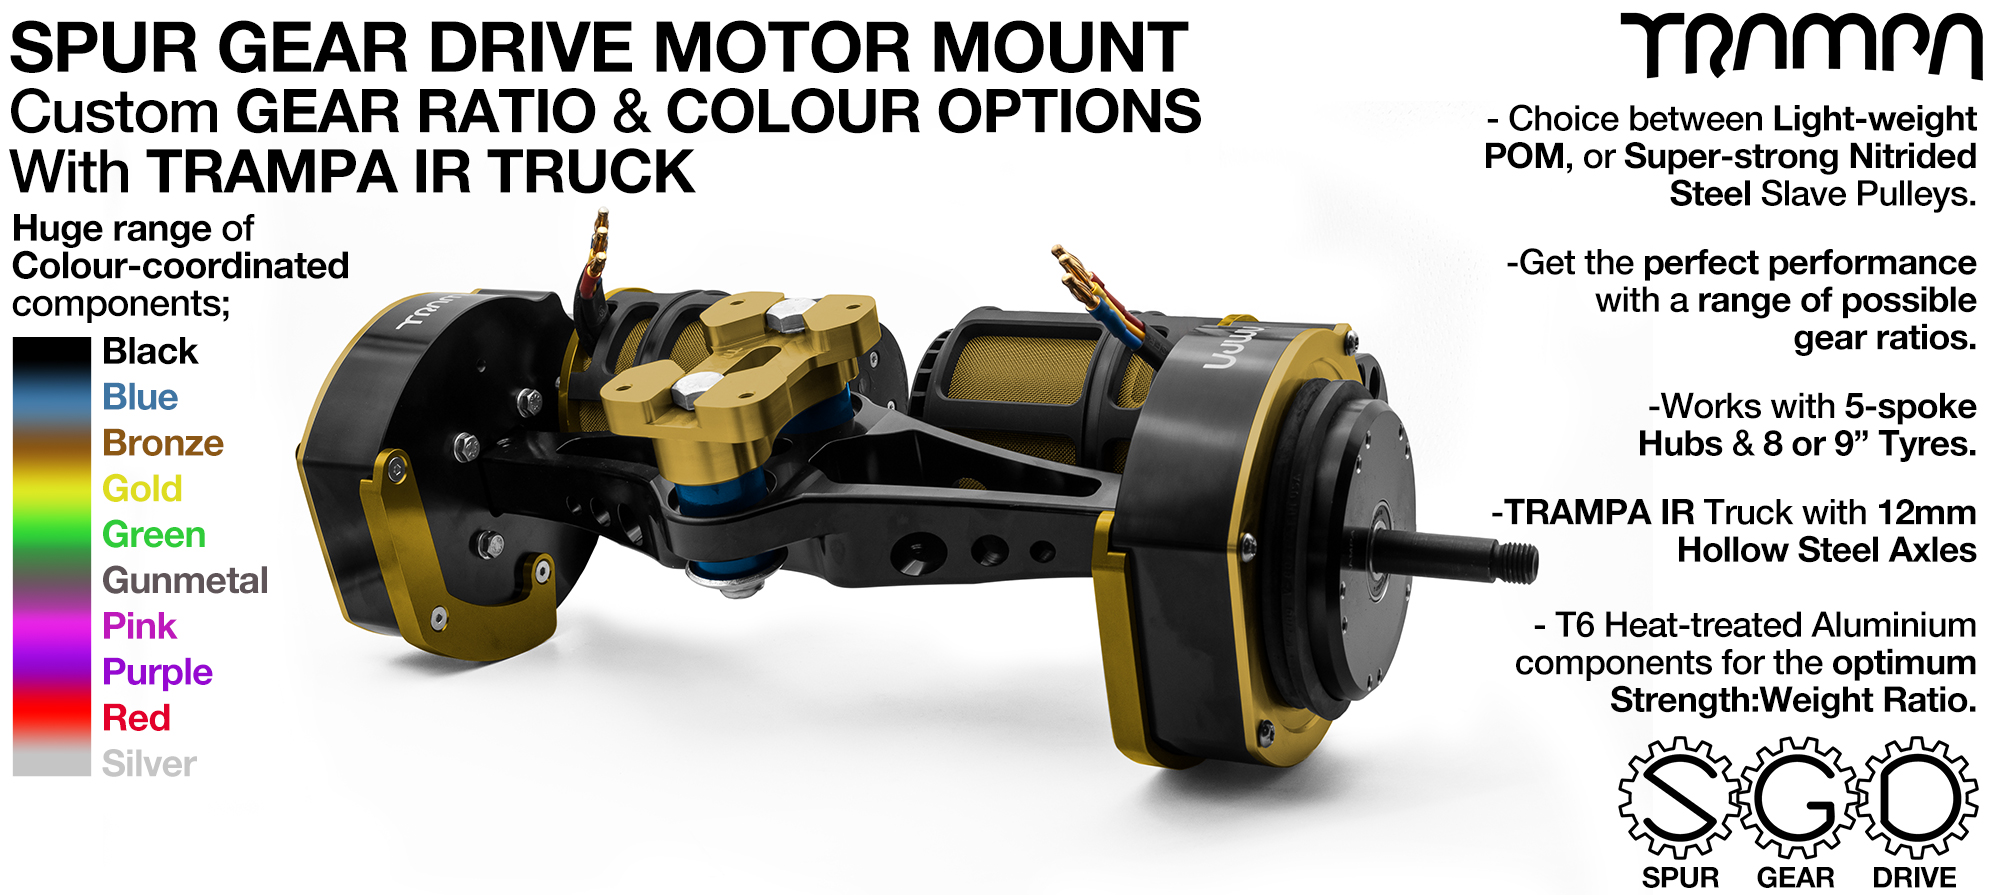 Spur Gear Drive Mountainboard Motor Mount & TRAMPA IR Truck